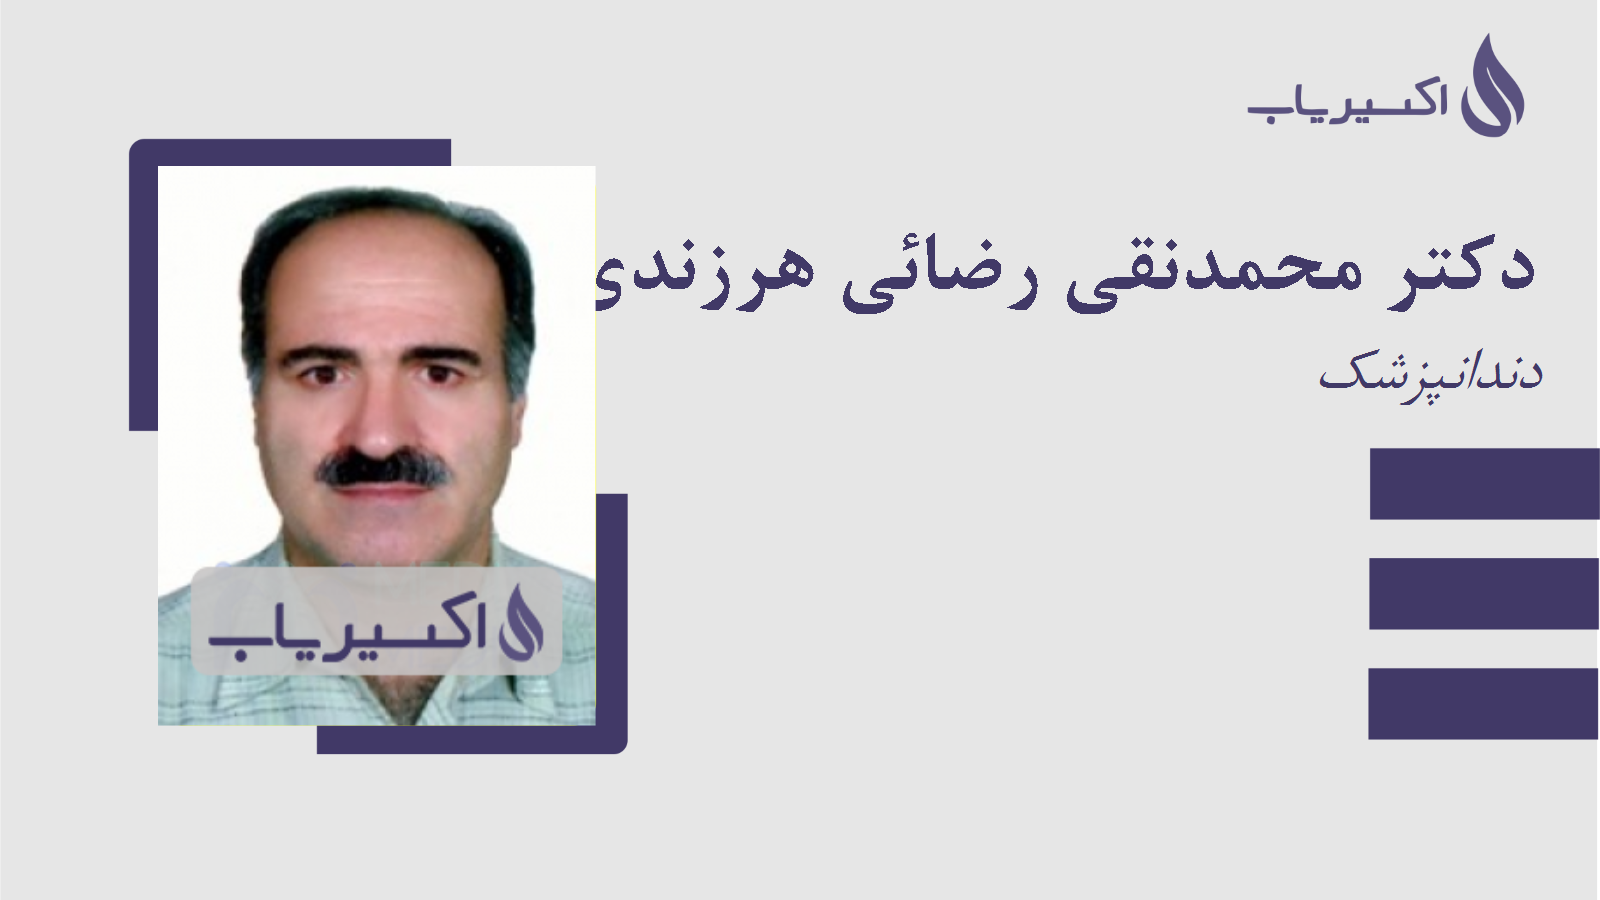 مطب دکتر محمدنقی رضائی هرزندی